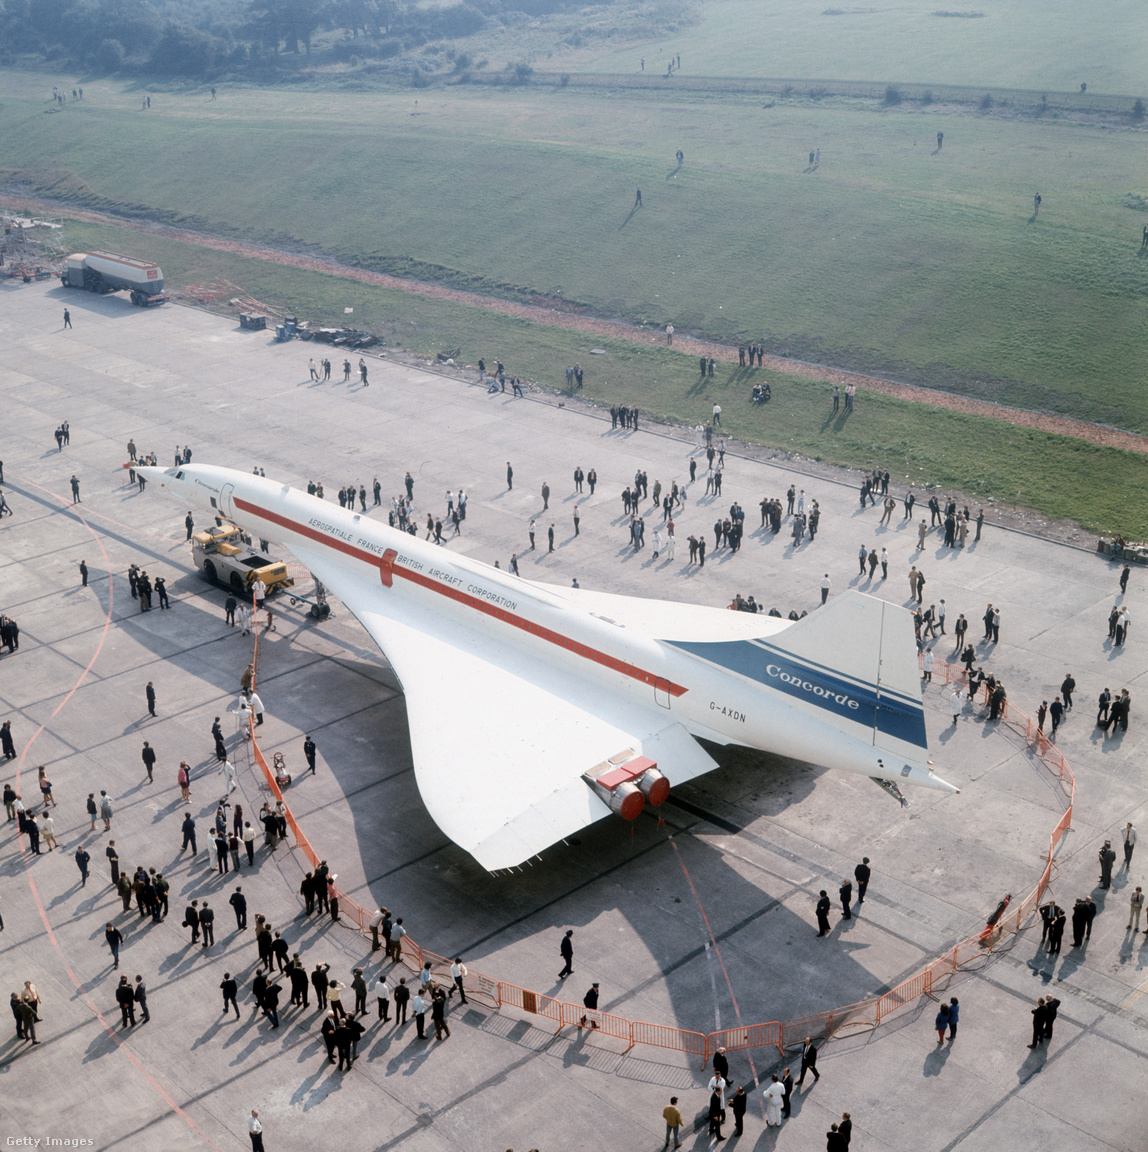 Filton, Bristol, Egyesült Királyság, 1971. A második angol-francia Concorde 002 szuperszonikus utasszállító repülőgép a British Aircraft Corporation Filton Bristolban található repülőterén, ahol a gépet építették. A 002 azonos a Concorde 001-gyel, amelyet Franciaországban szereltek össze, és amely ugyanazokat a francia és brit gyártmányú alkatrészeket tartalmazta